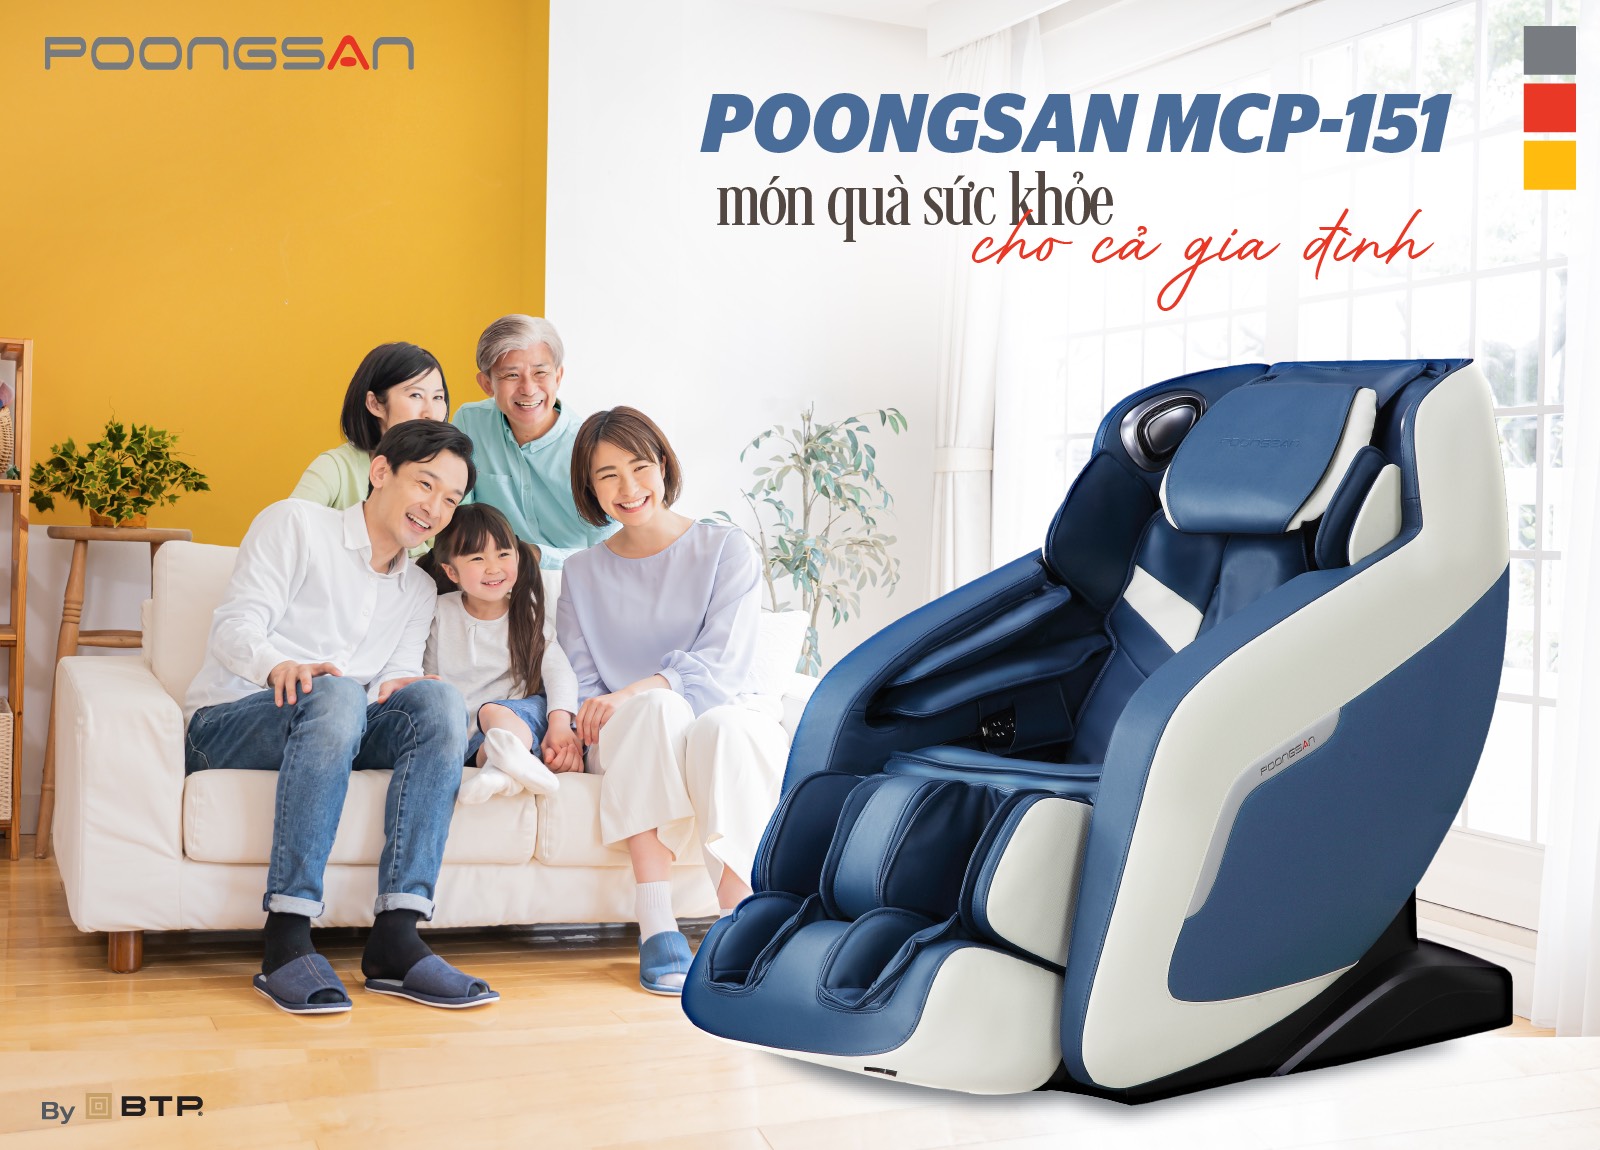 Poongsan MCP-151 món quà sức khỏe toàn diện cho cả gia đình